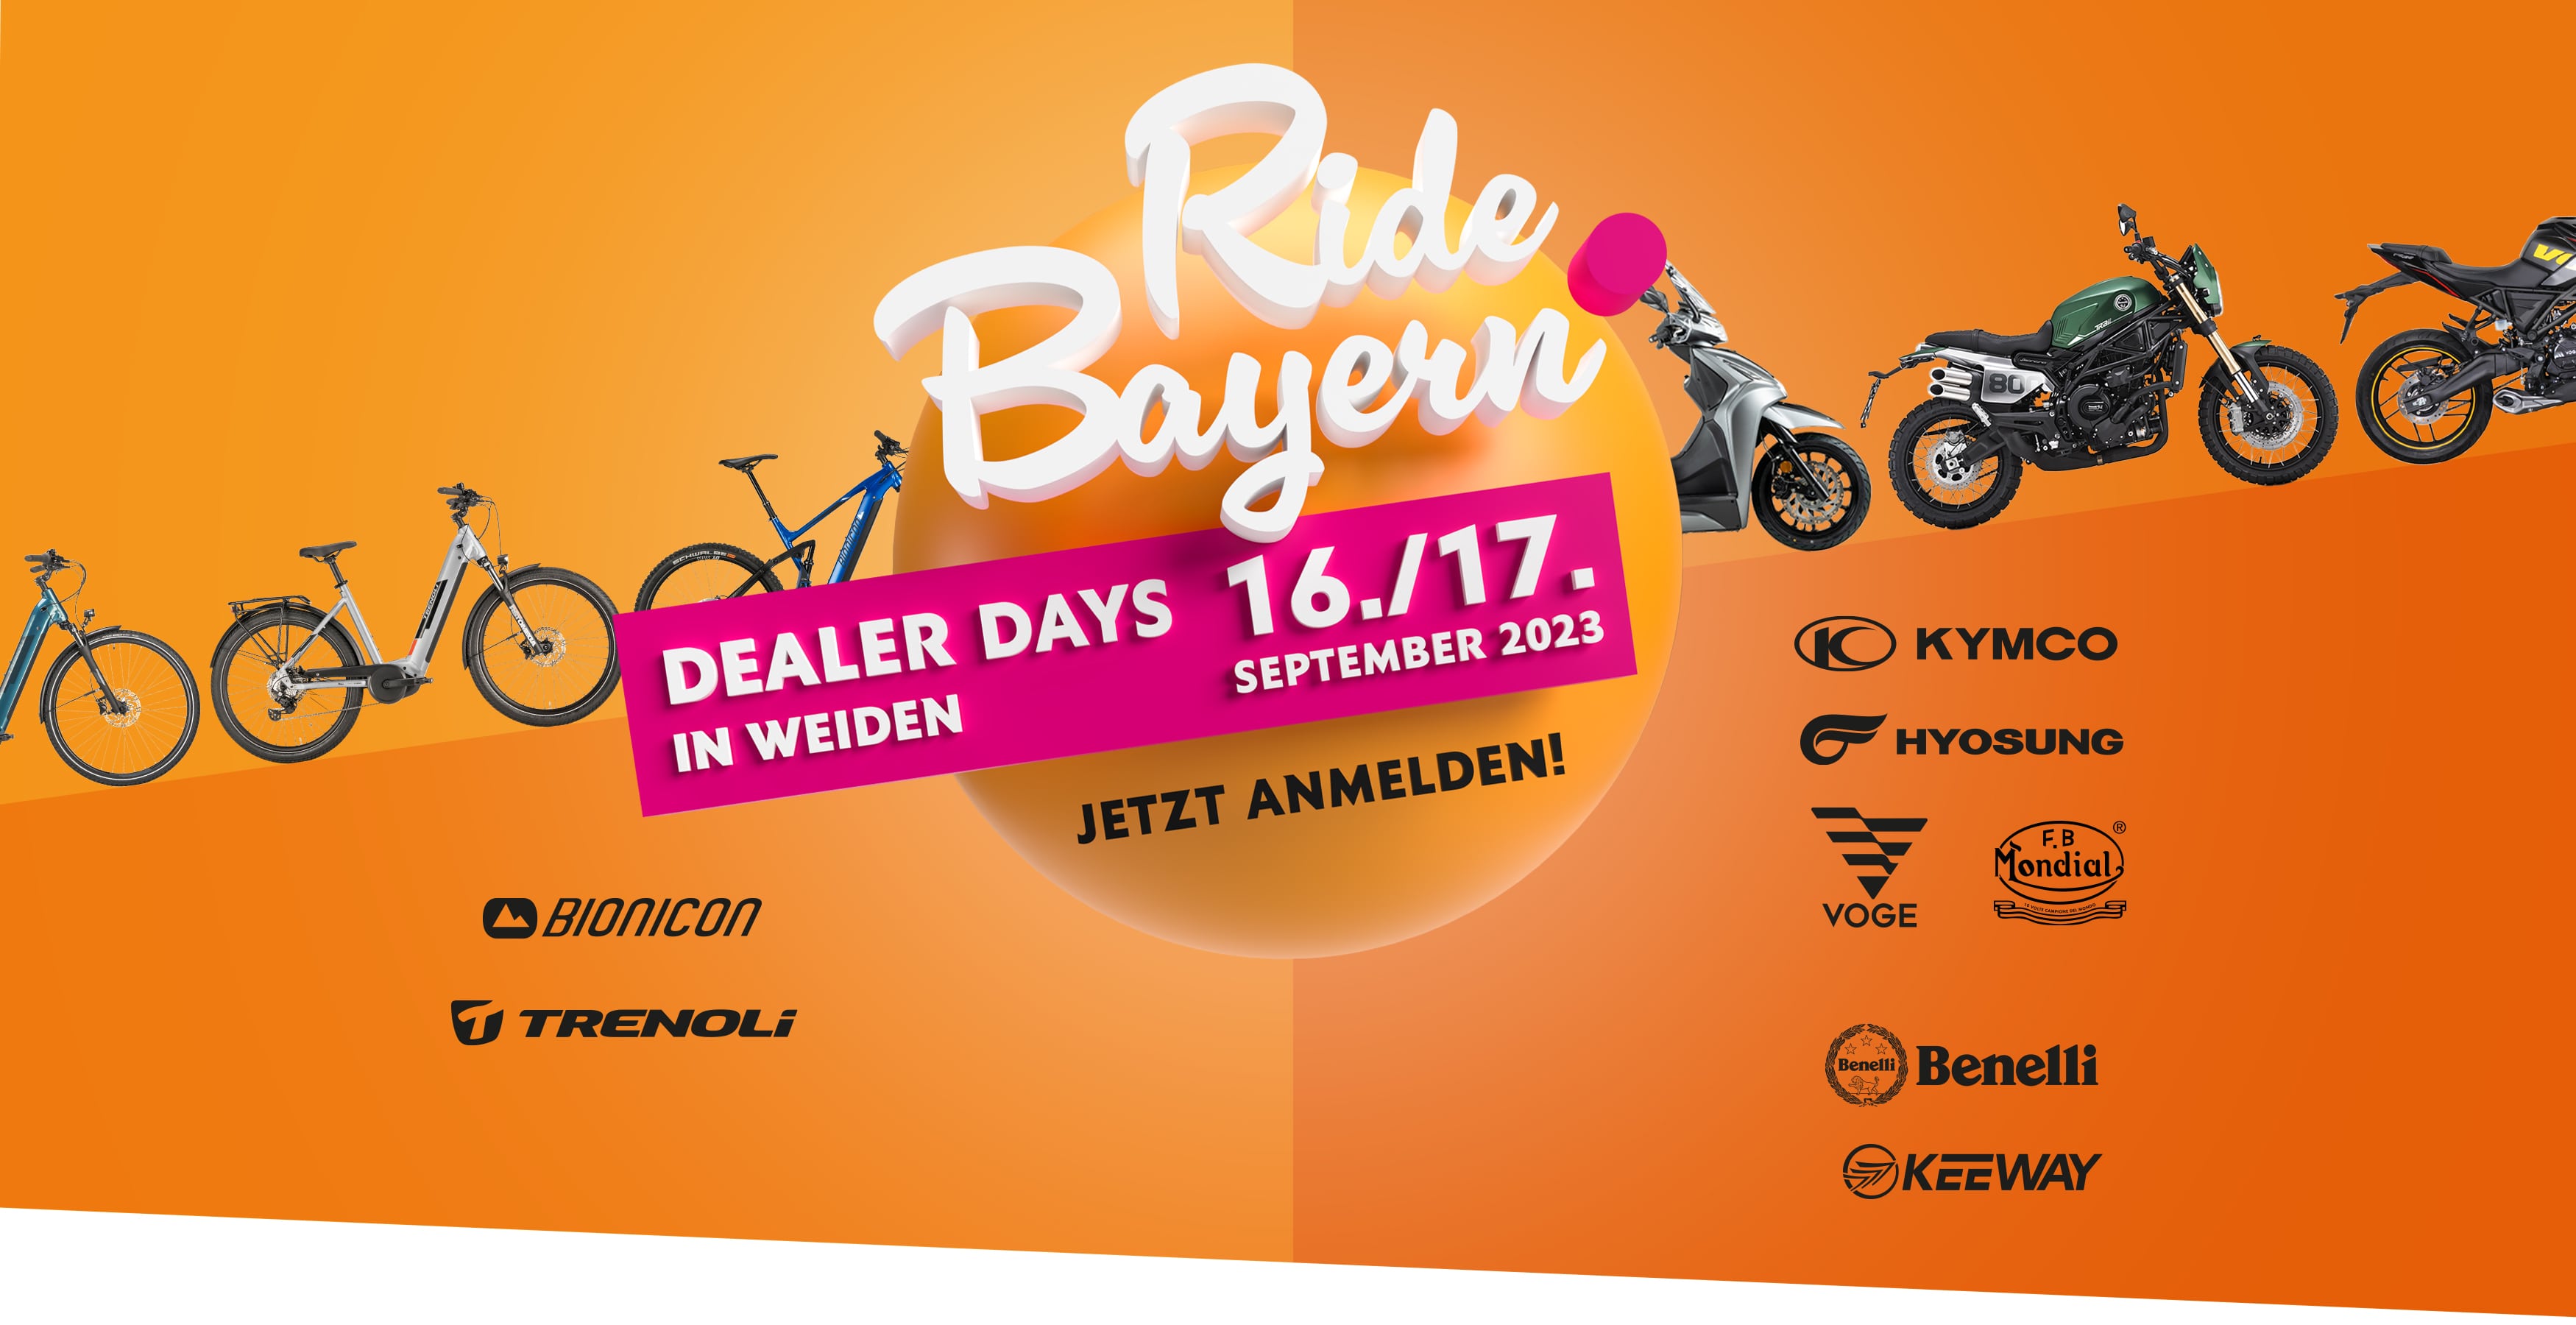 Seitenbanner für die Hausmesse in Weiden am 16./17. September. Es werden zwei Fahrräder der Marken Bionicon und Trenoli dargestellt.